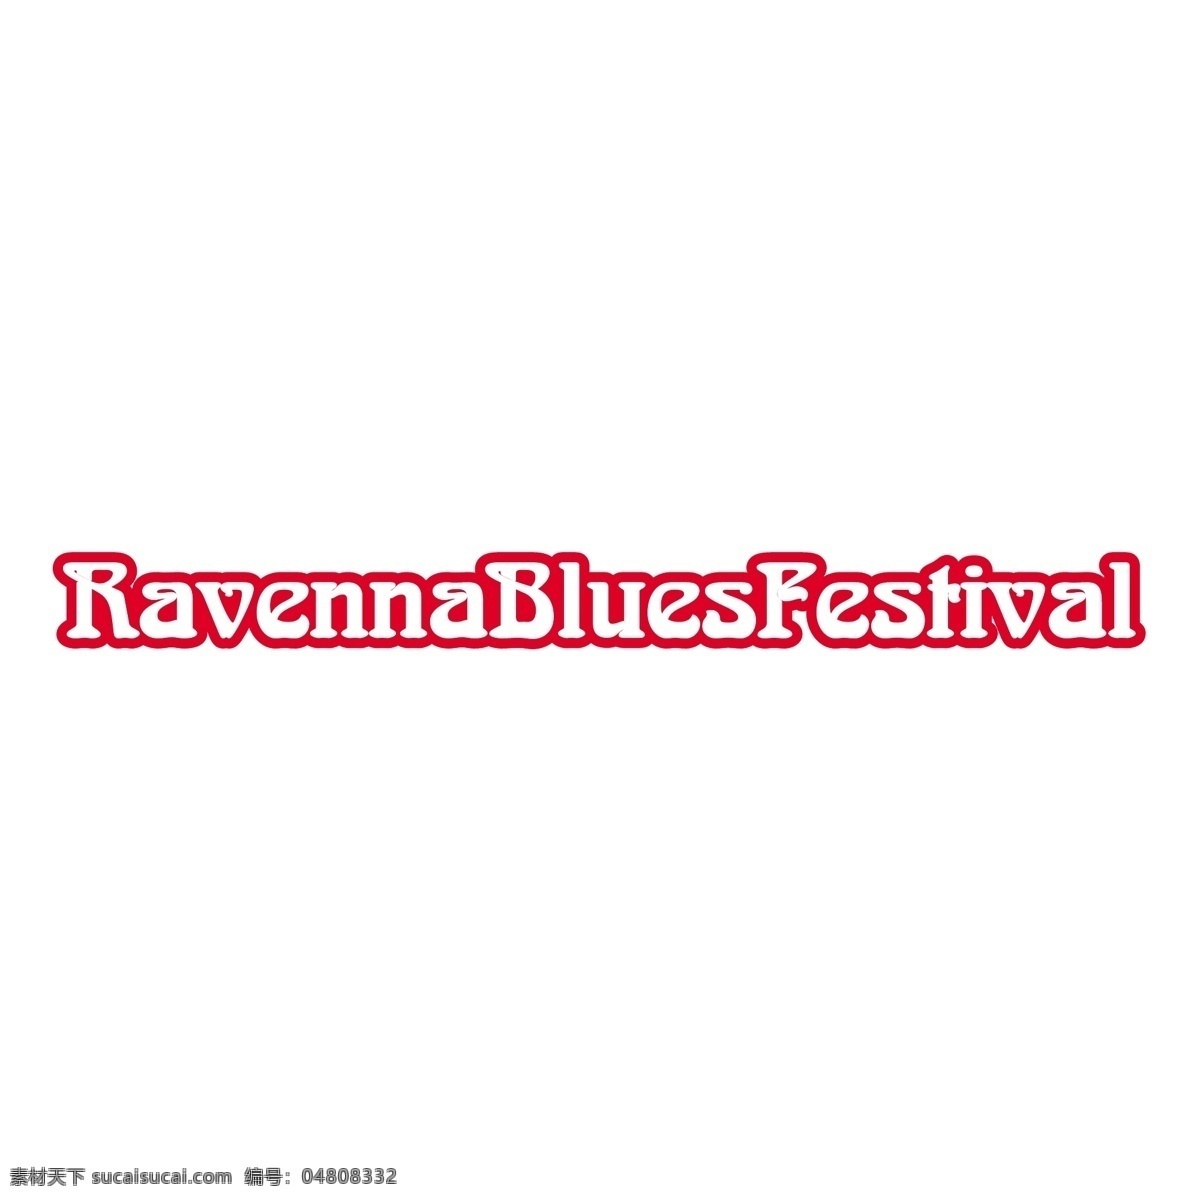 拉 文纳 蓝 调 音乐节 节 布鲁斯 拉文纳 矢量图 其他矢量图